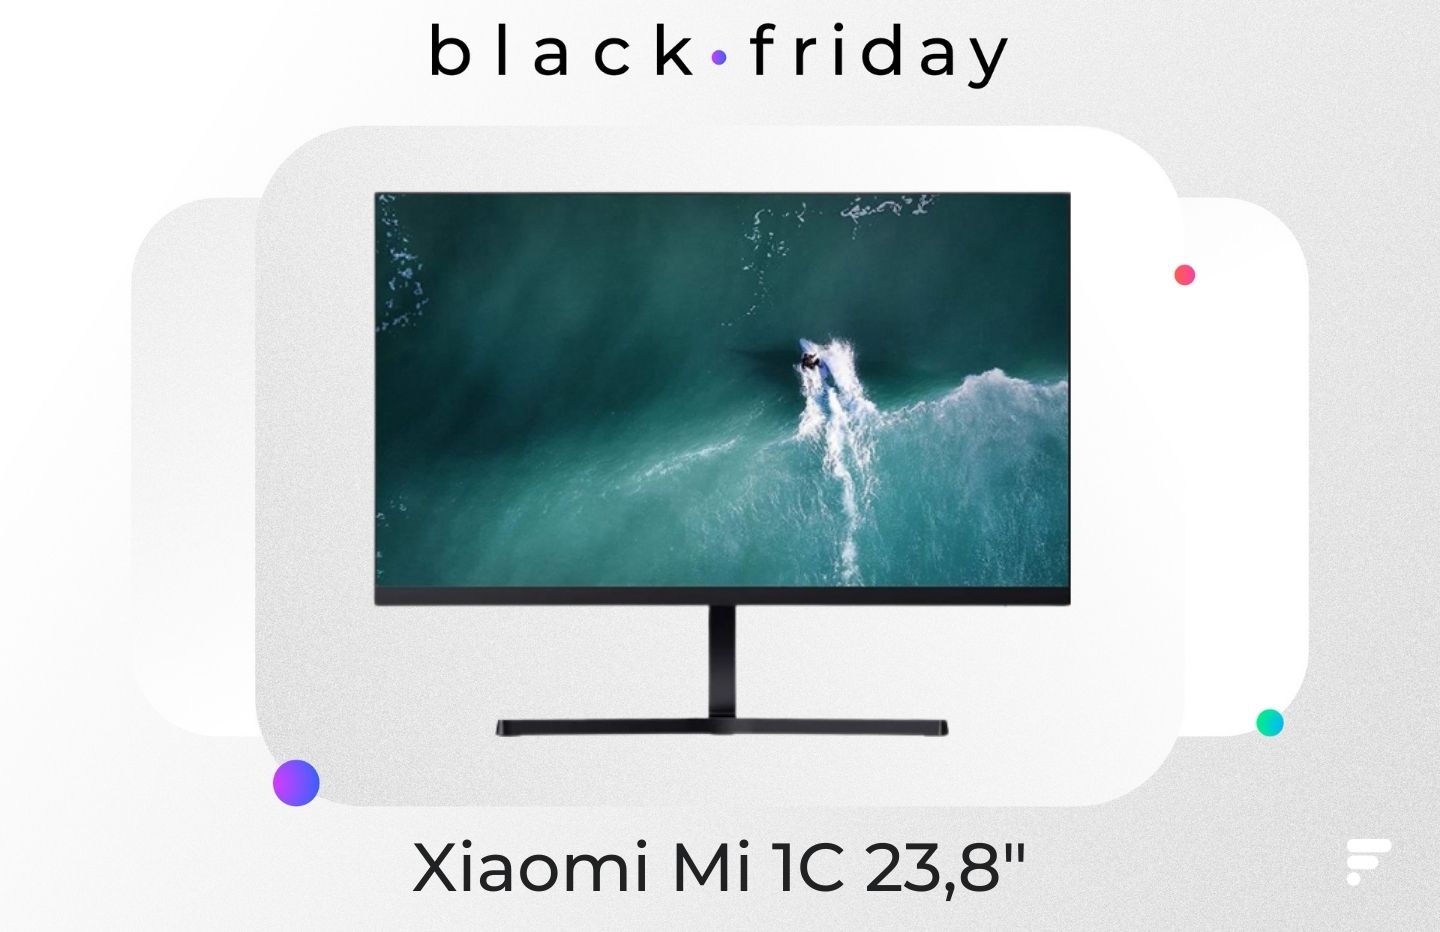 Pendant le Black Friday, cet écran PC de Xiaomi coûte moins de 100 euros